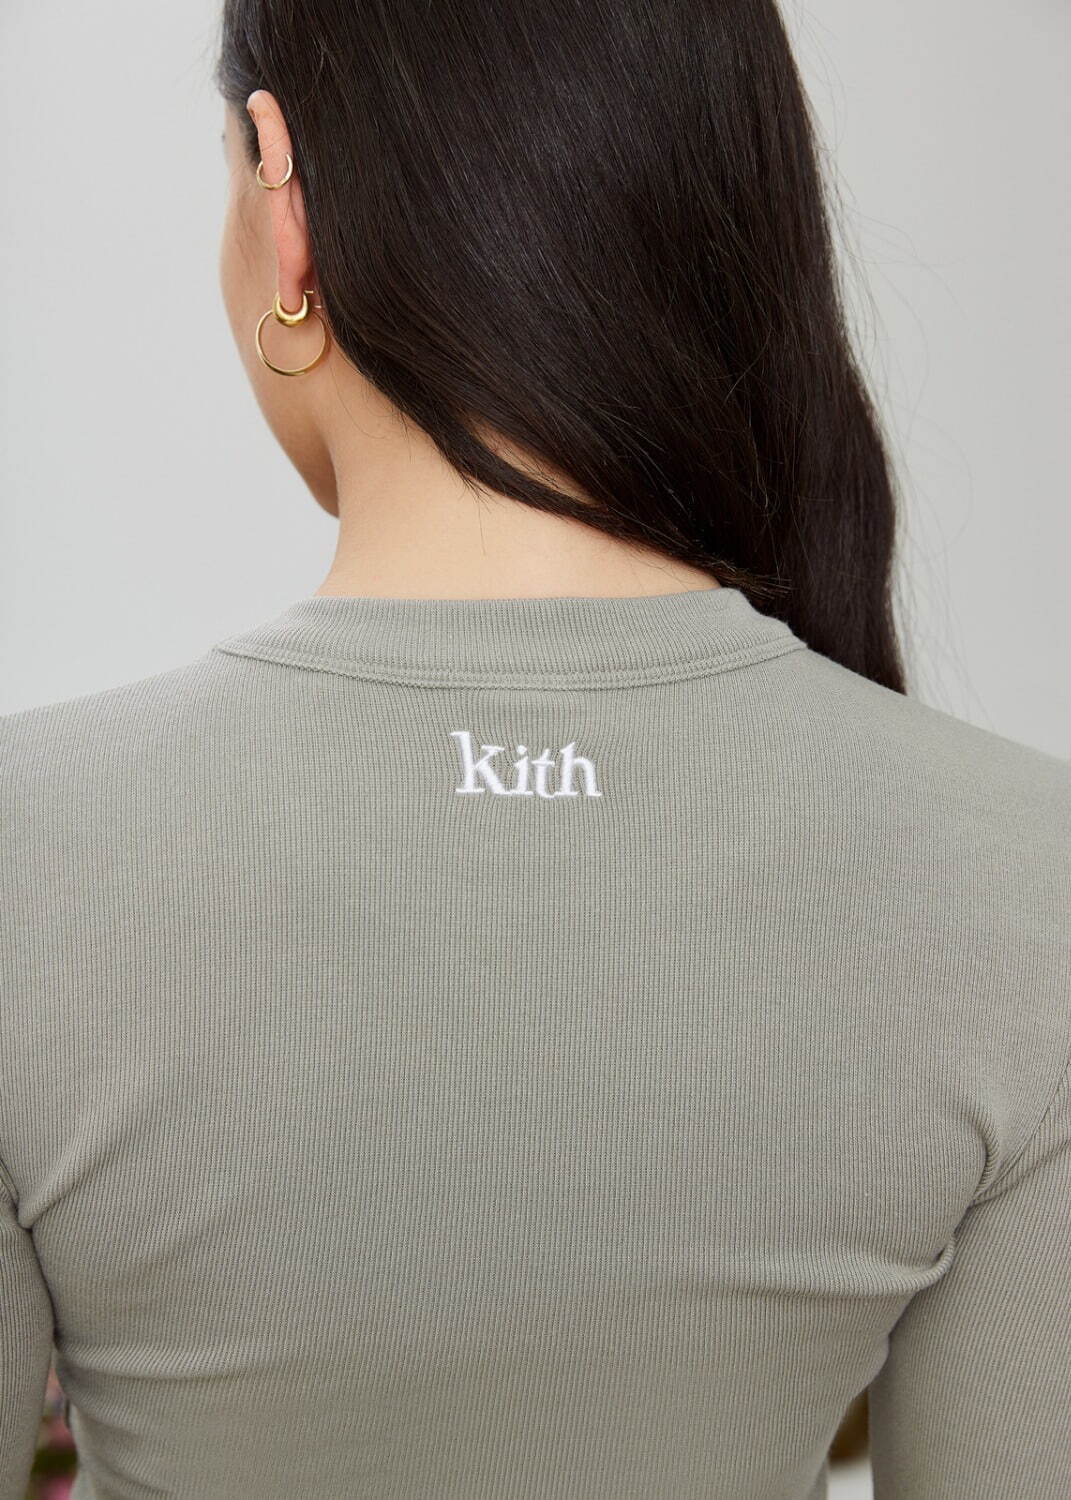 キス(Kith) 2022年春ウィメンズコレクション ディテール - 写真42